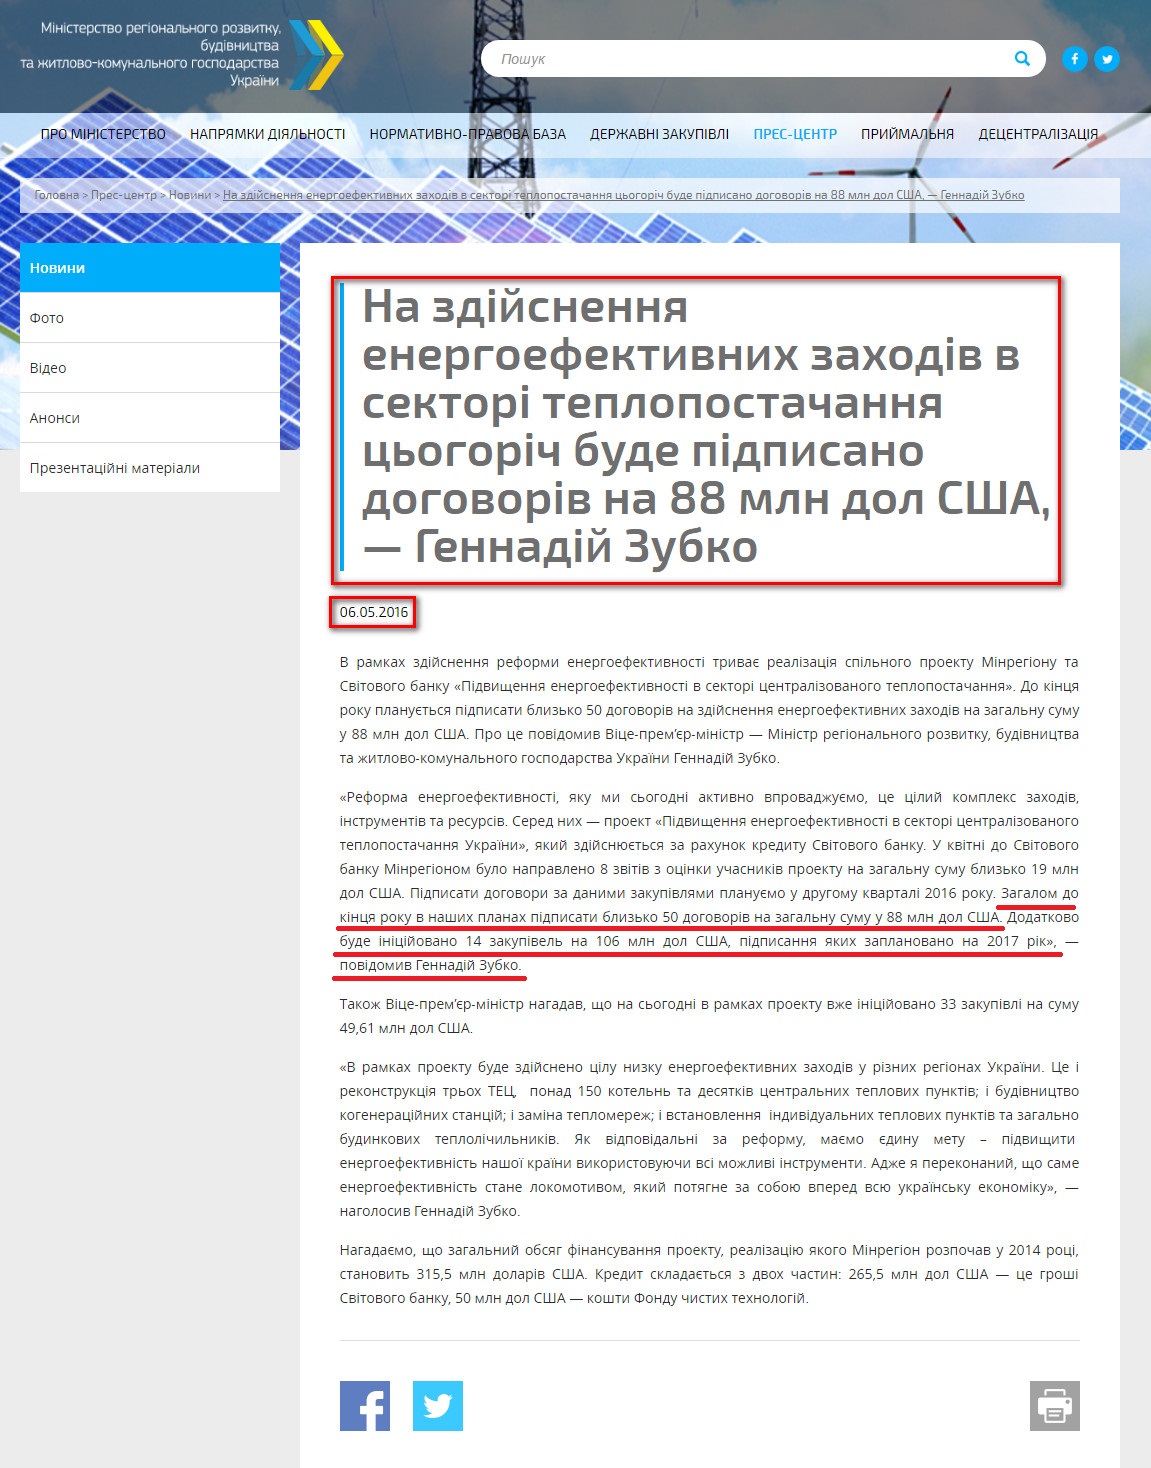 http://www.minregion.gov.ua/press/news/na-zdiysnennya-energoefektivnih-zahodiv-v-sektori-teplopostachannya-tsogorich-bude-pidpisano-dogovoriv-na-88-mln-dol-ssha-gennadiy-zubko/